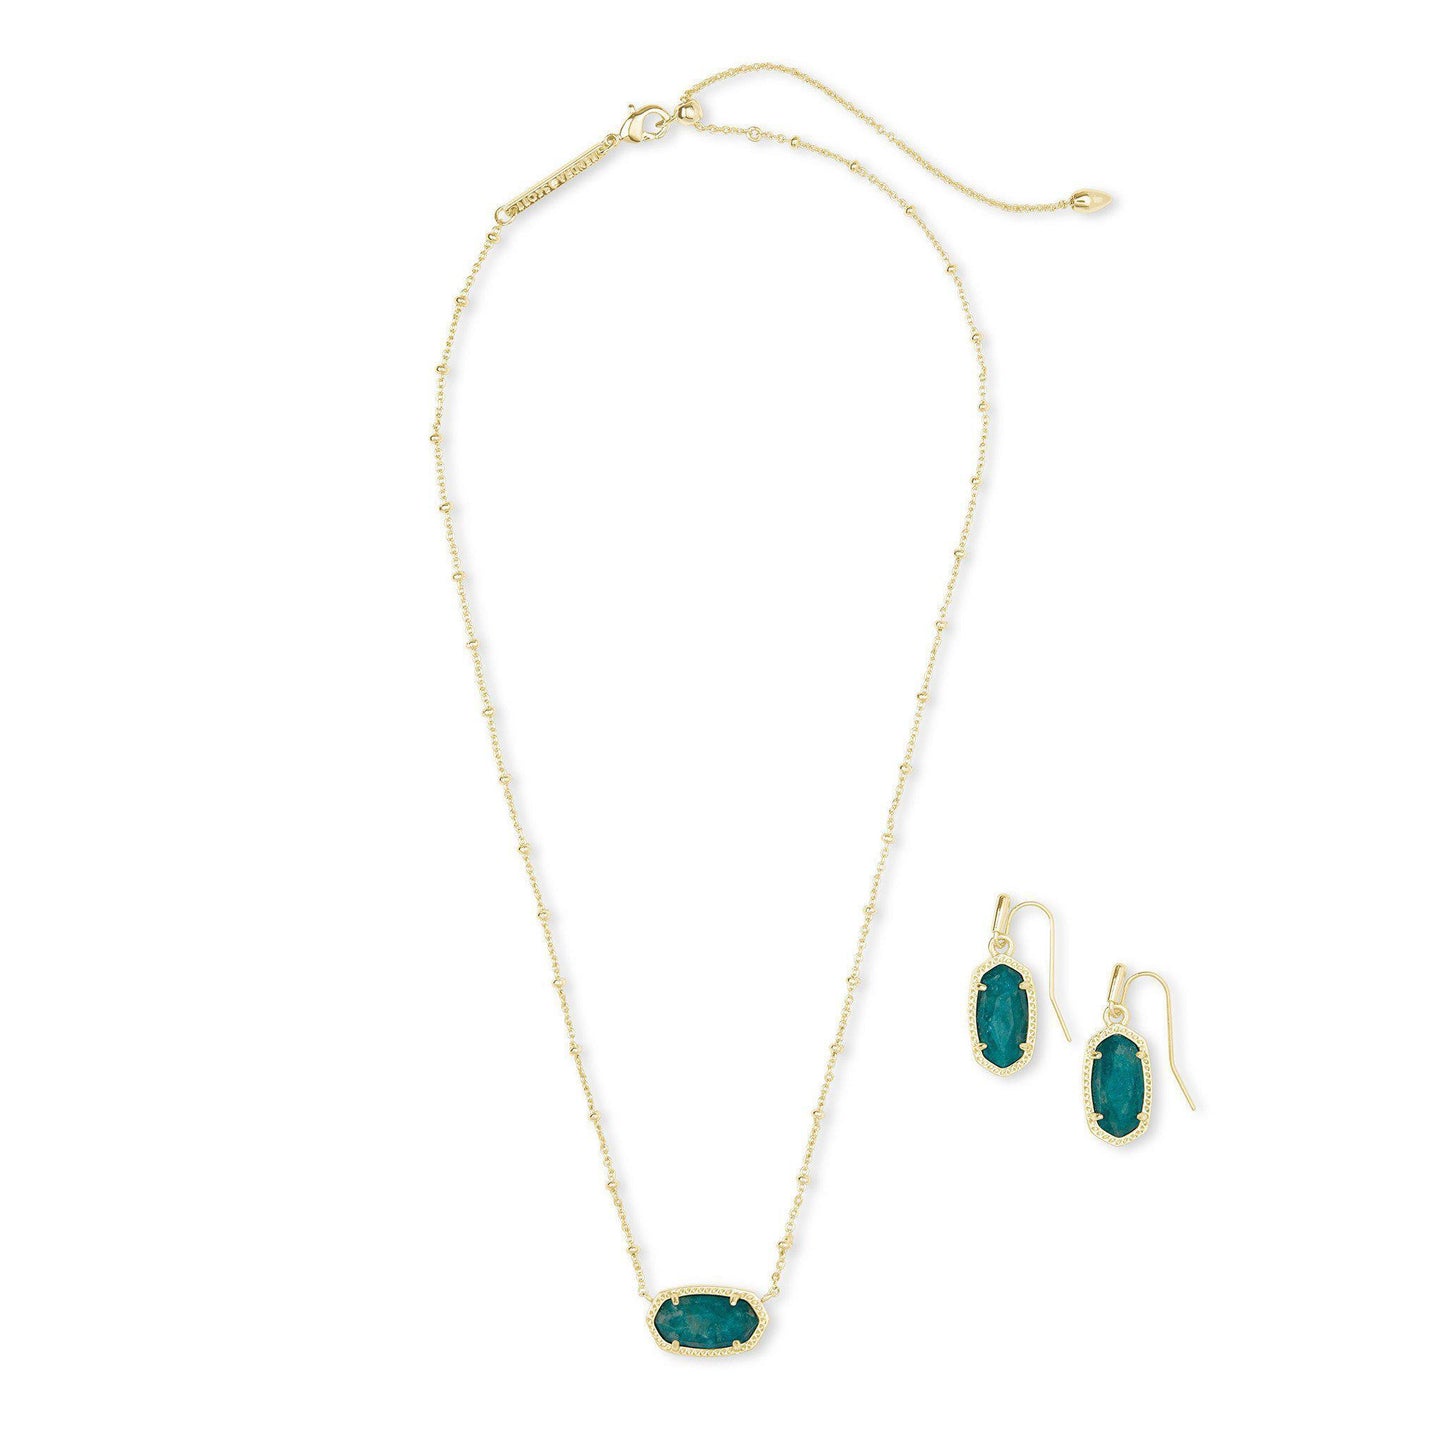 Elisa Satellite Necklace & Lee Earrings Gold Dark Teal Amazonite Gift Set